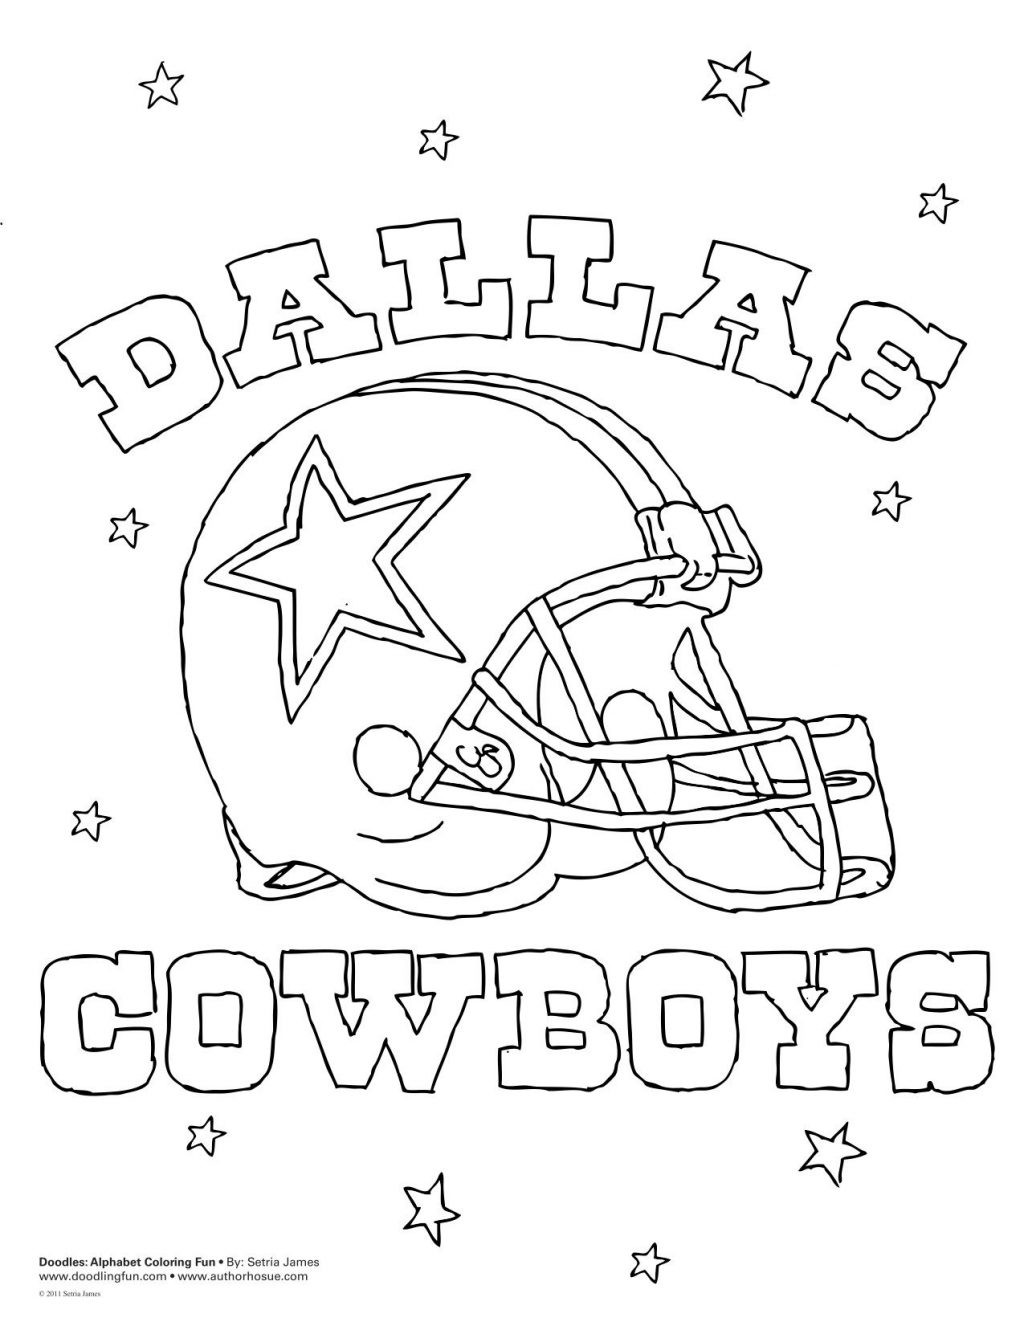 Dallas Cowboys Coloring Pages
 Coloring Remarkable Dallas Cowboys Coloring Pages